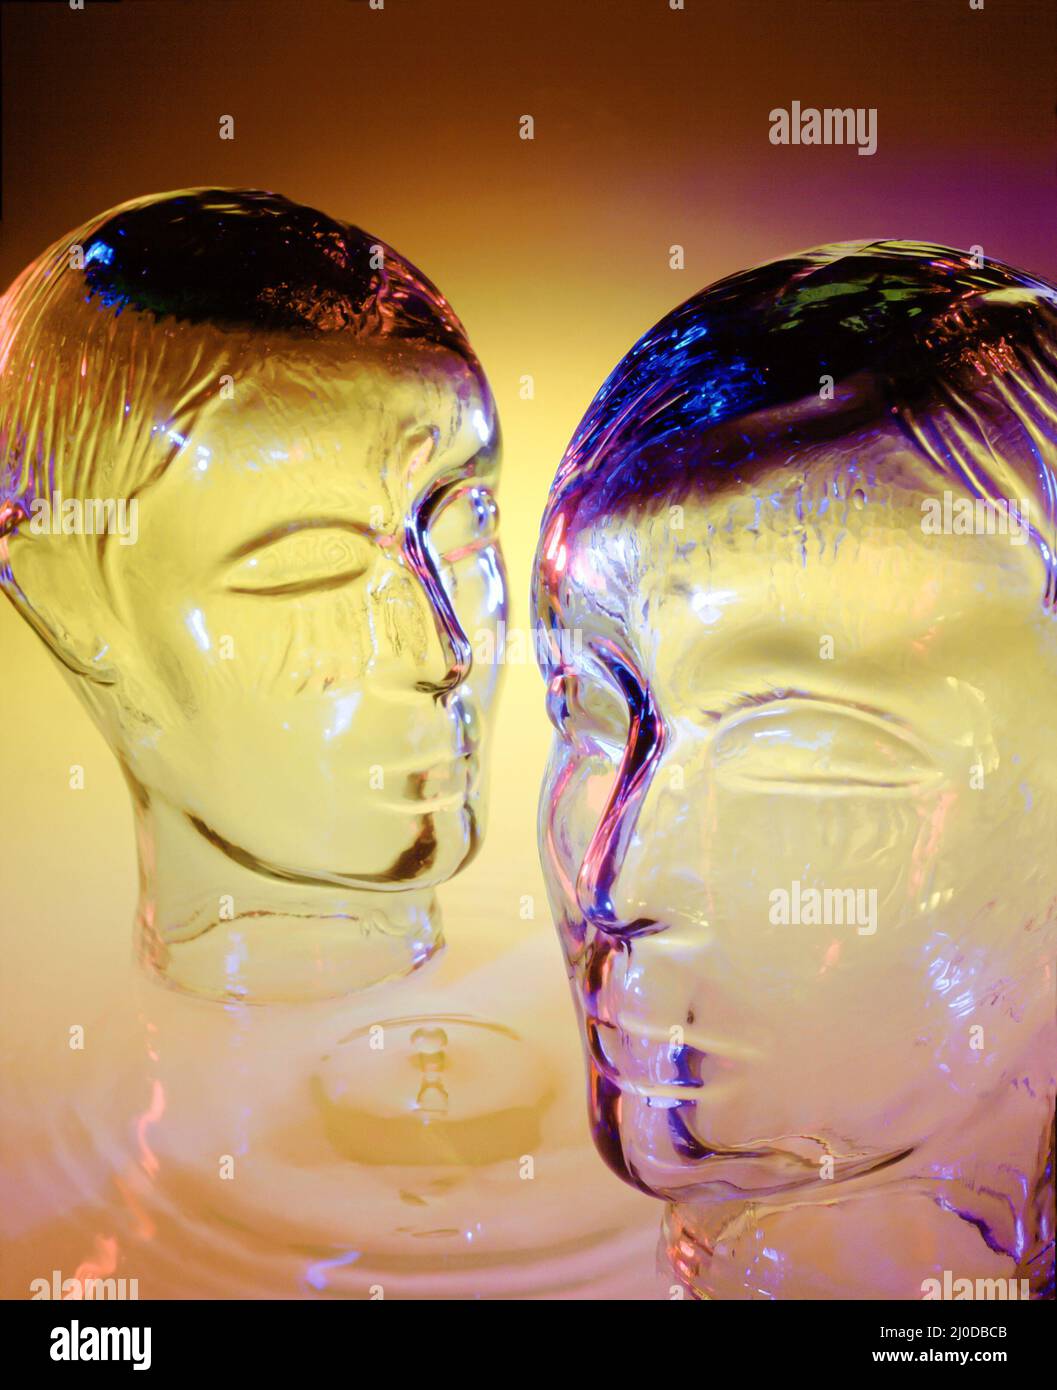 Par de cabezas de vidrio conceptual con caída de agua y ondulaciones Foto de stock